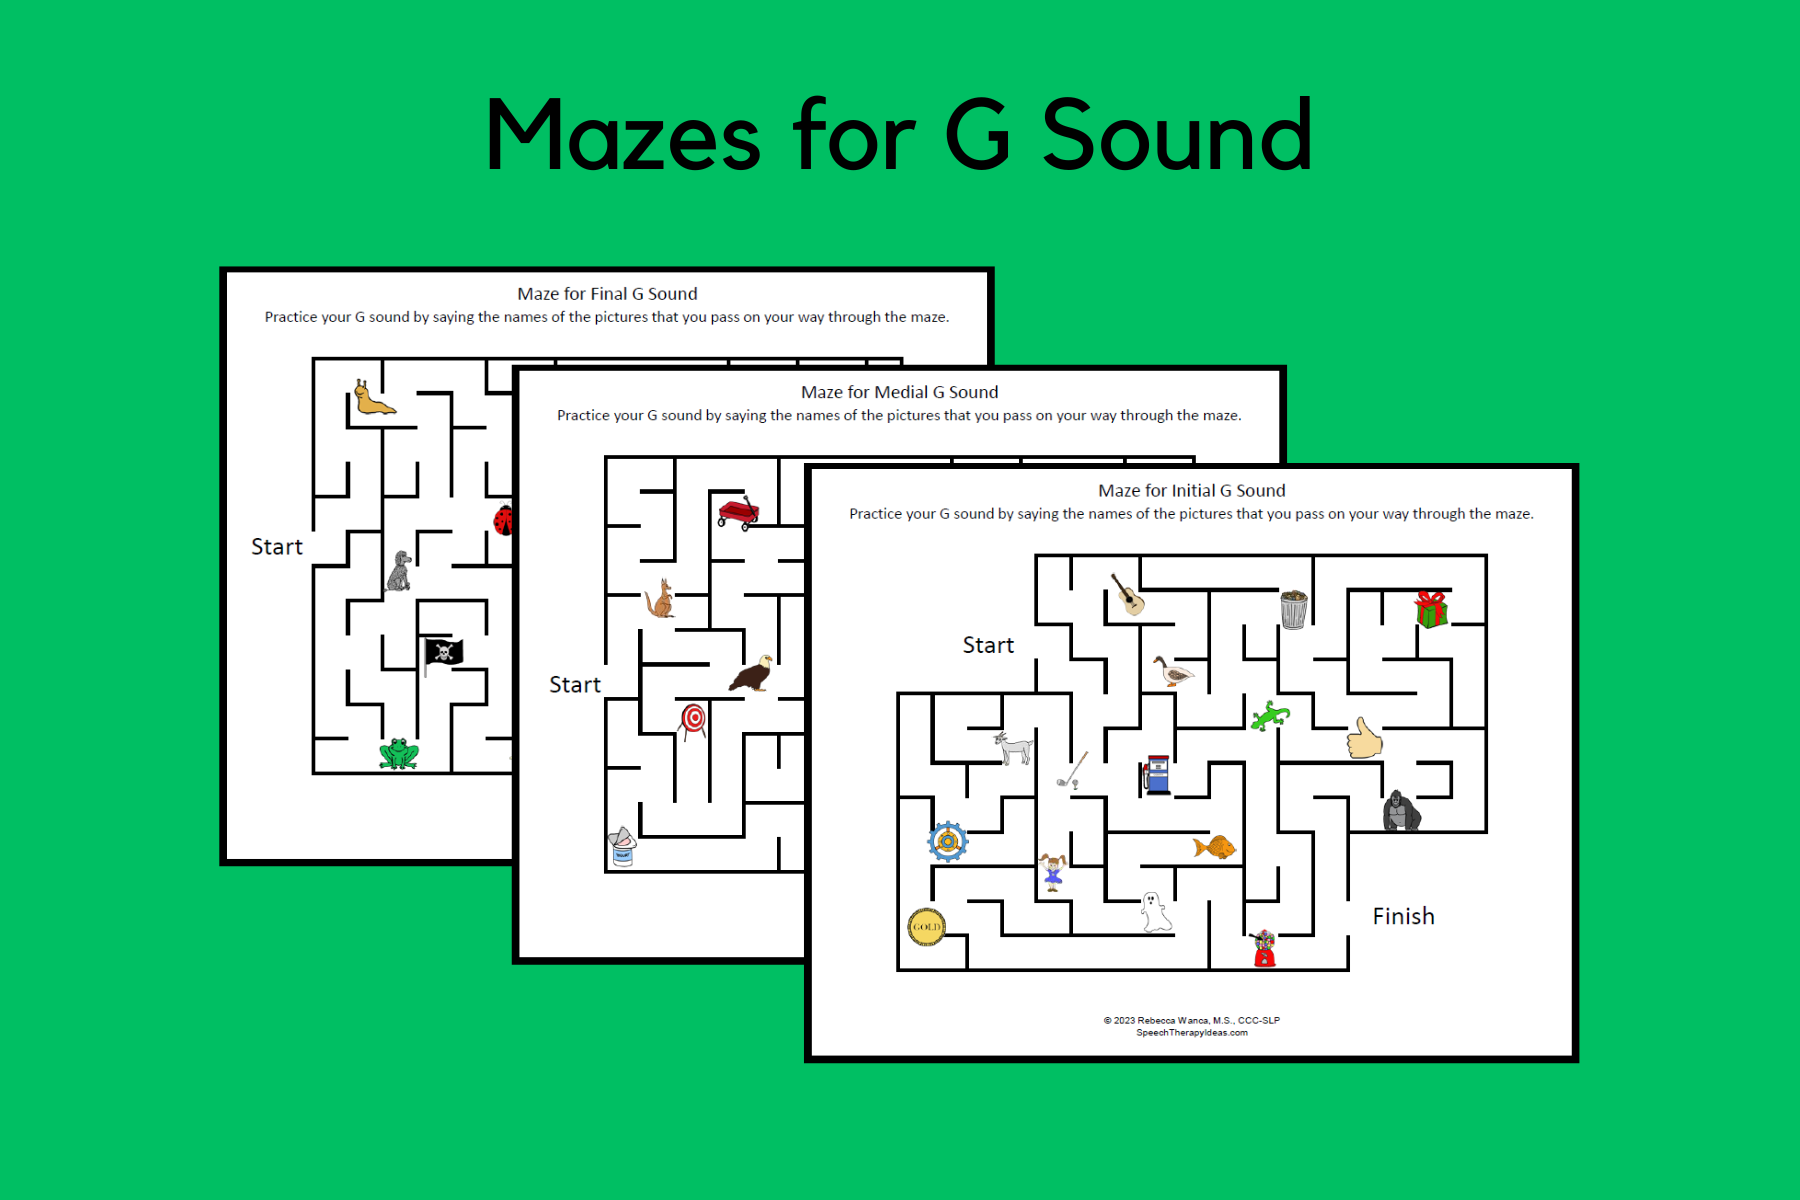 Mazes for G Sound